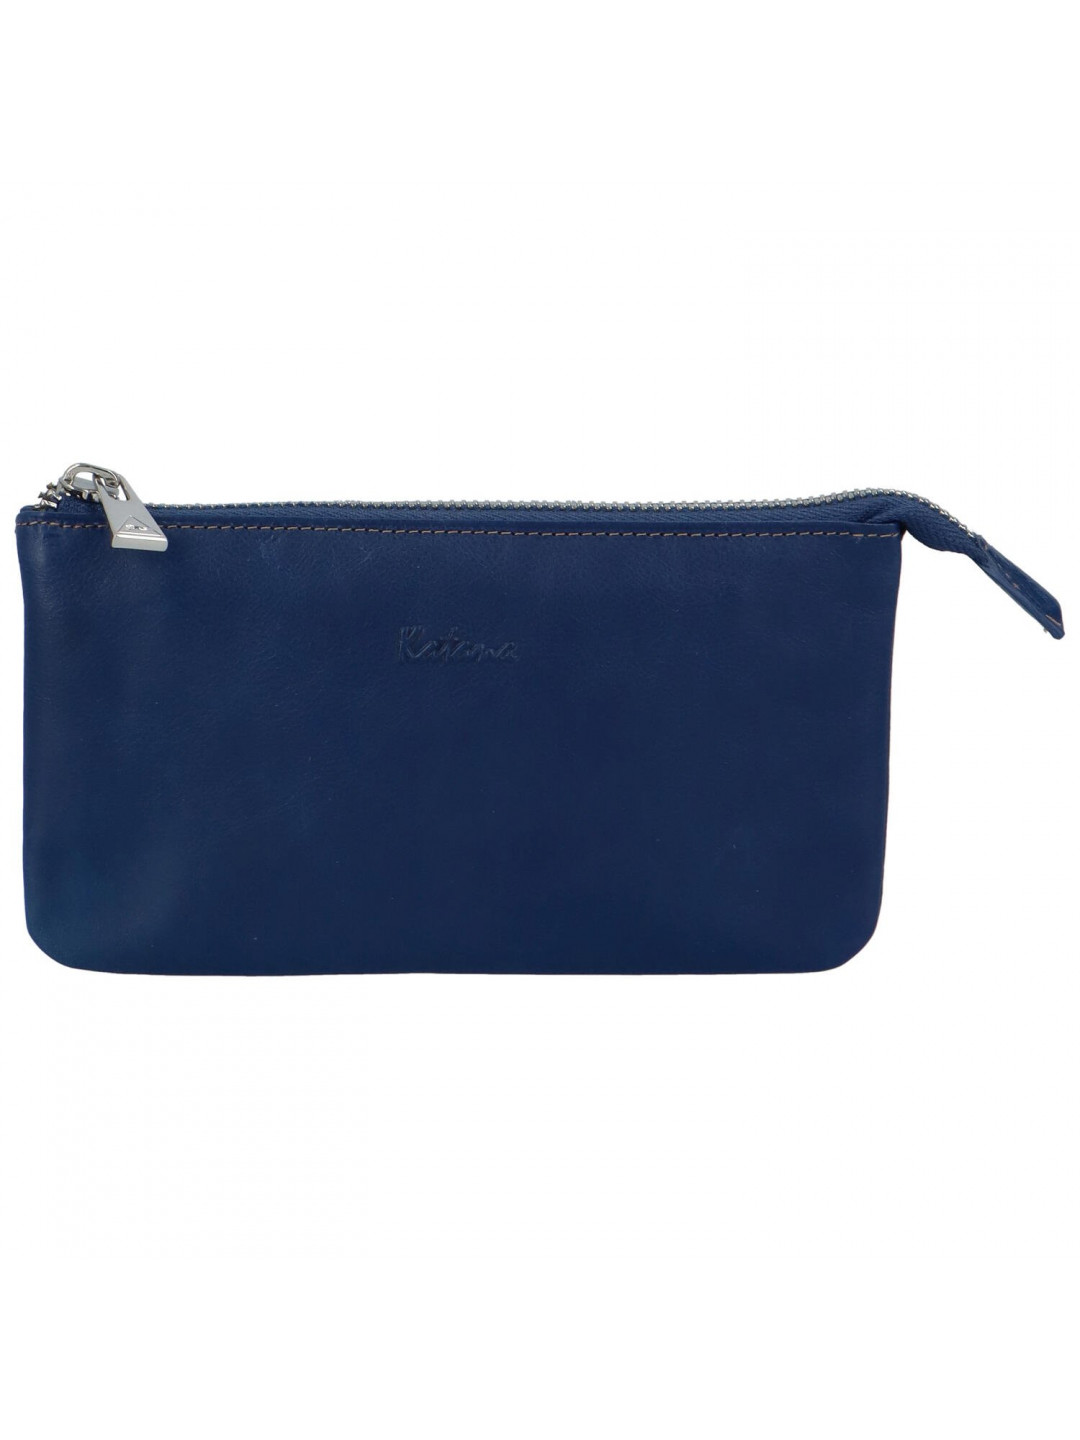 Luxusní dámská peněženka Katana Vermo tmavě modrá